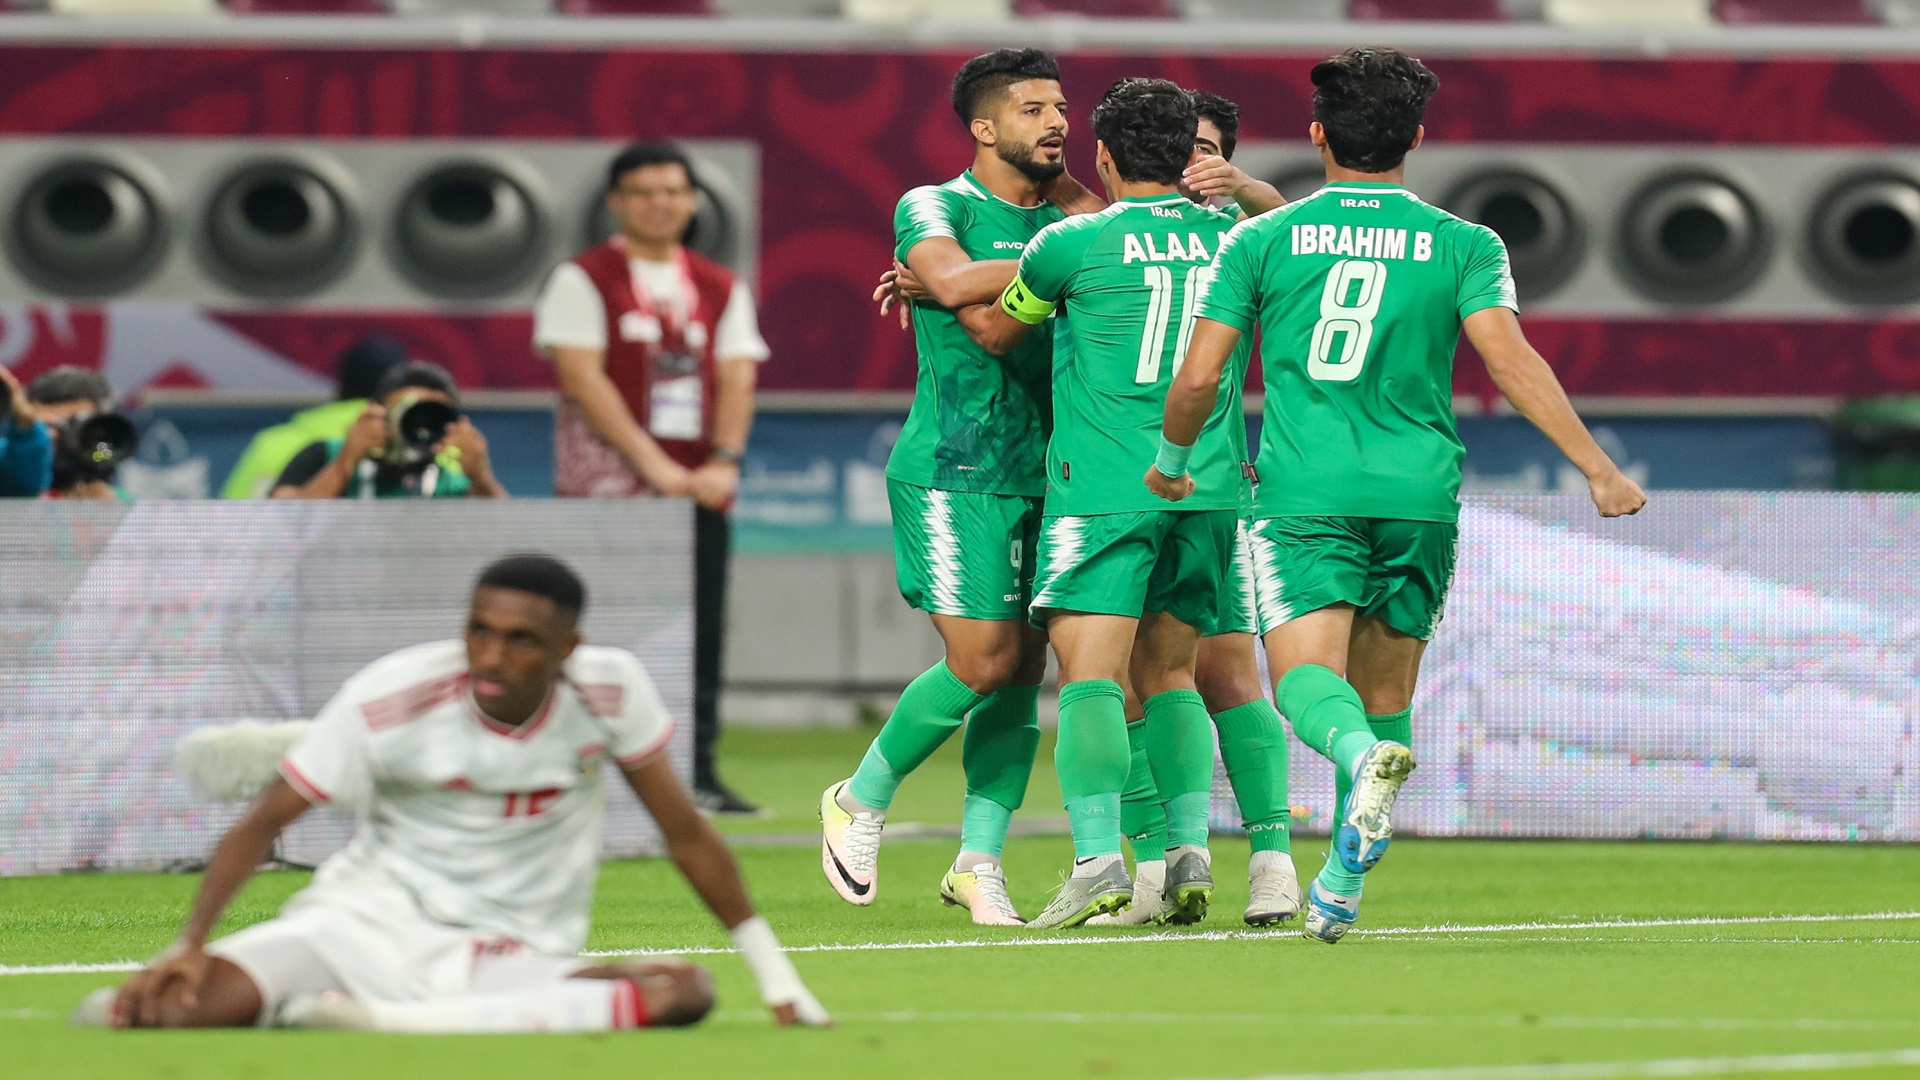 المنتخب العراقي يستعيد قوته الضاربة قبل لقاء البحرين